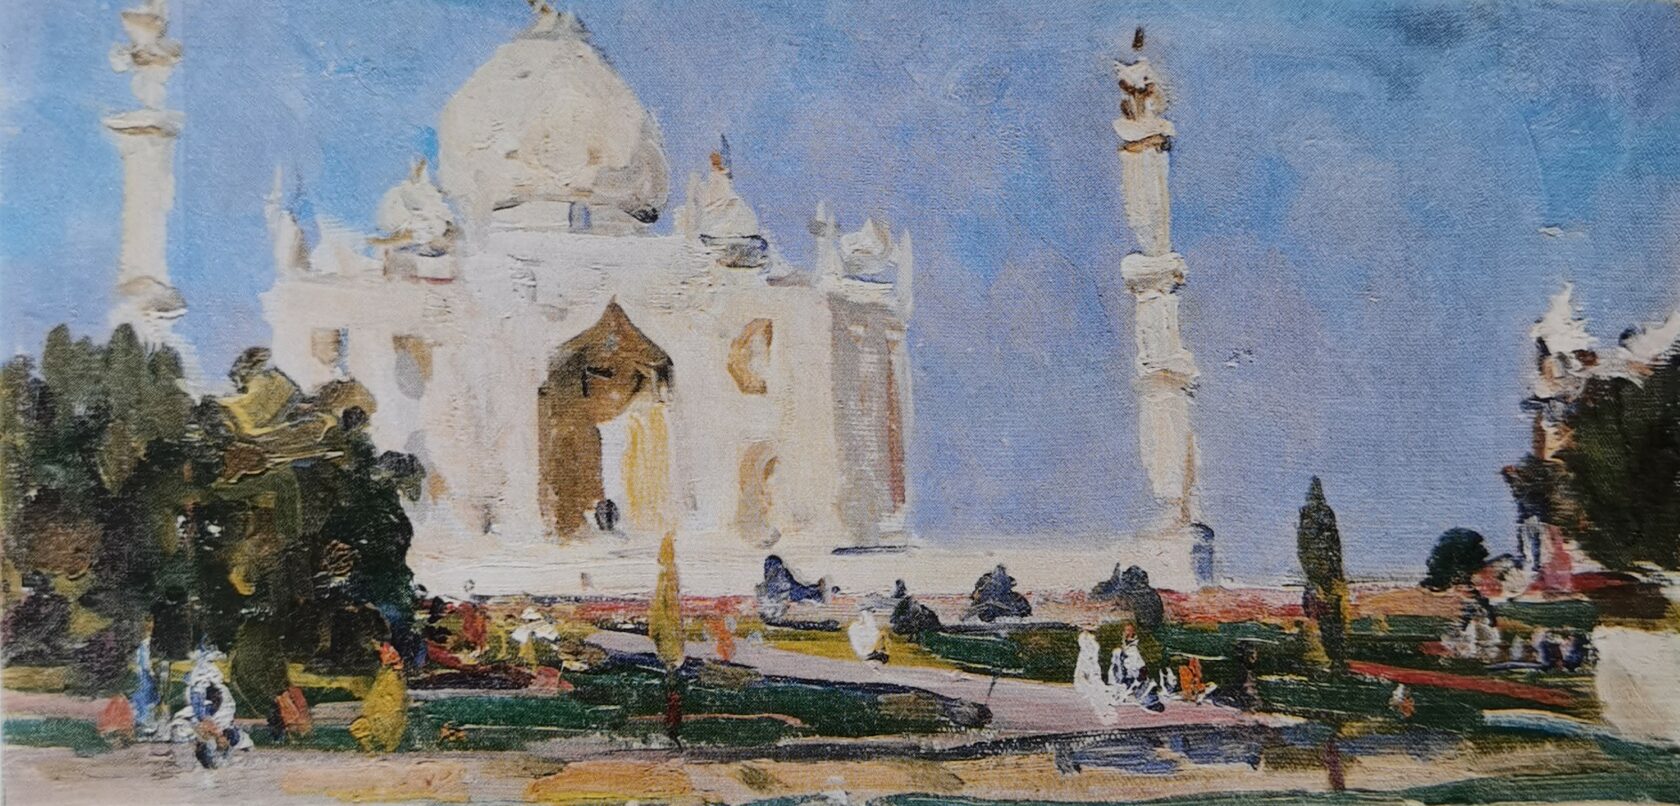 Индия. Мавзолей Тадж-Махал в Агре, 1963 г.